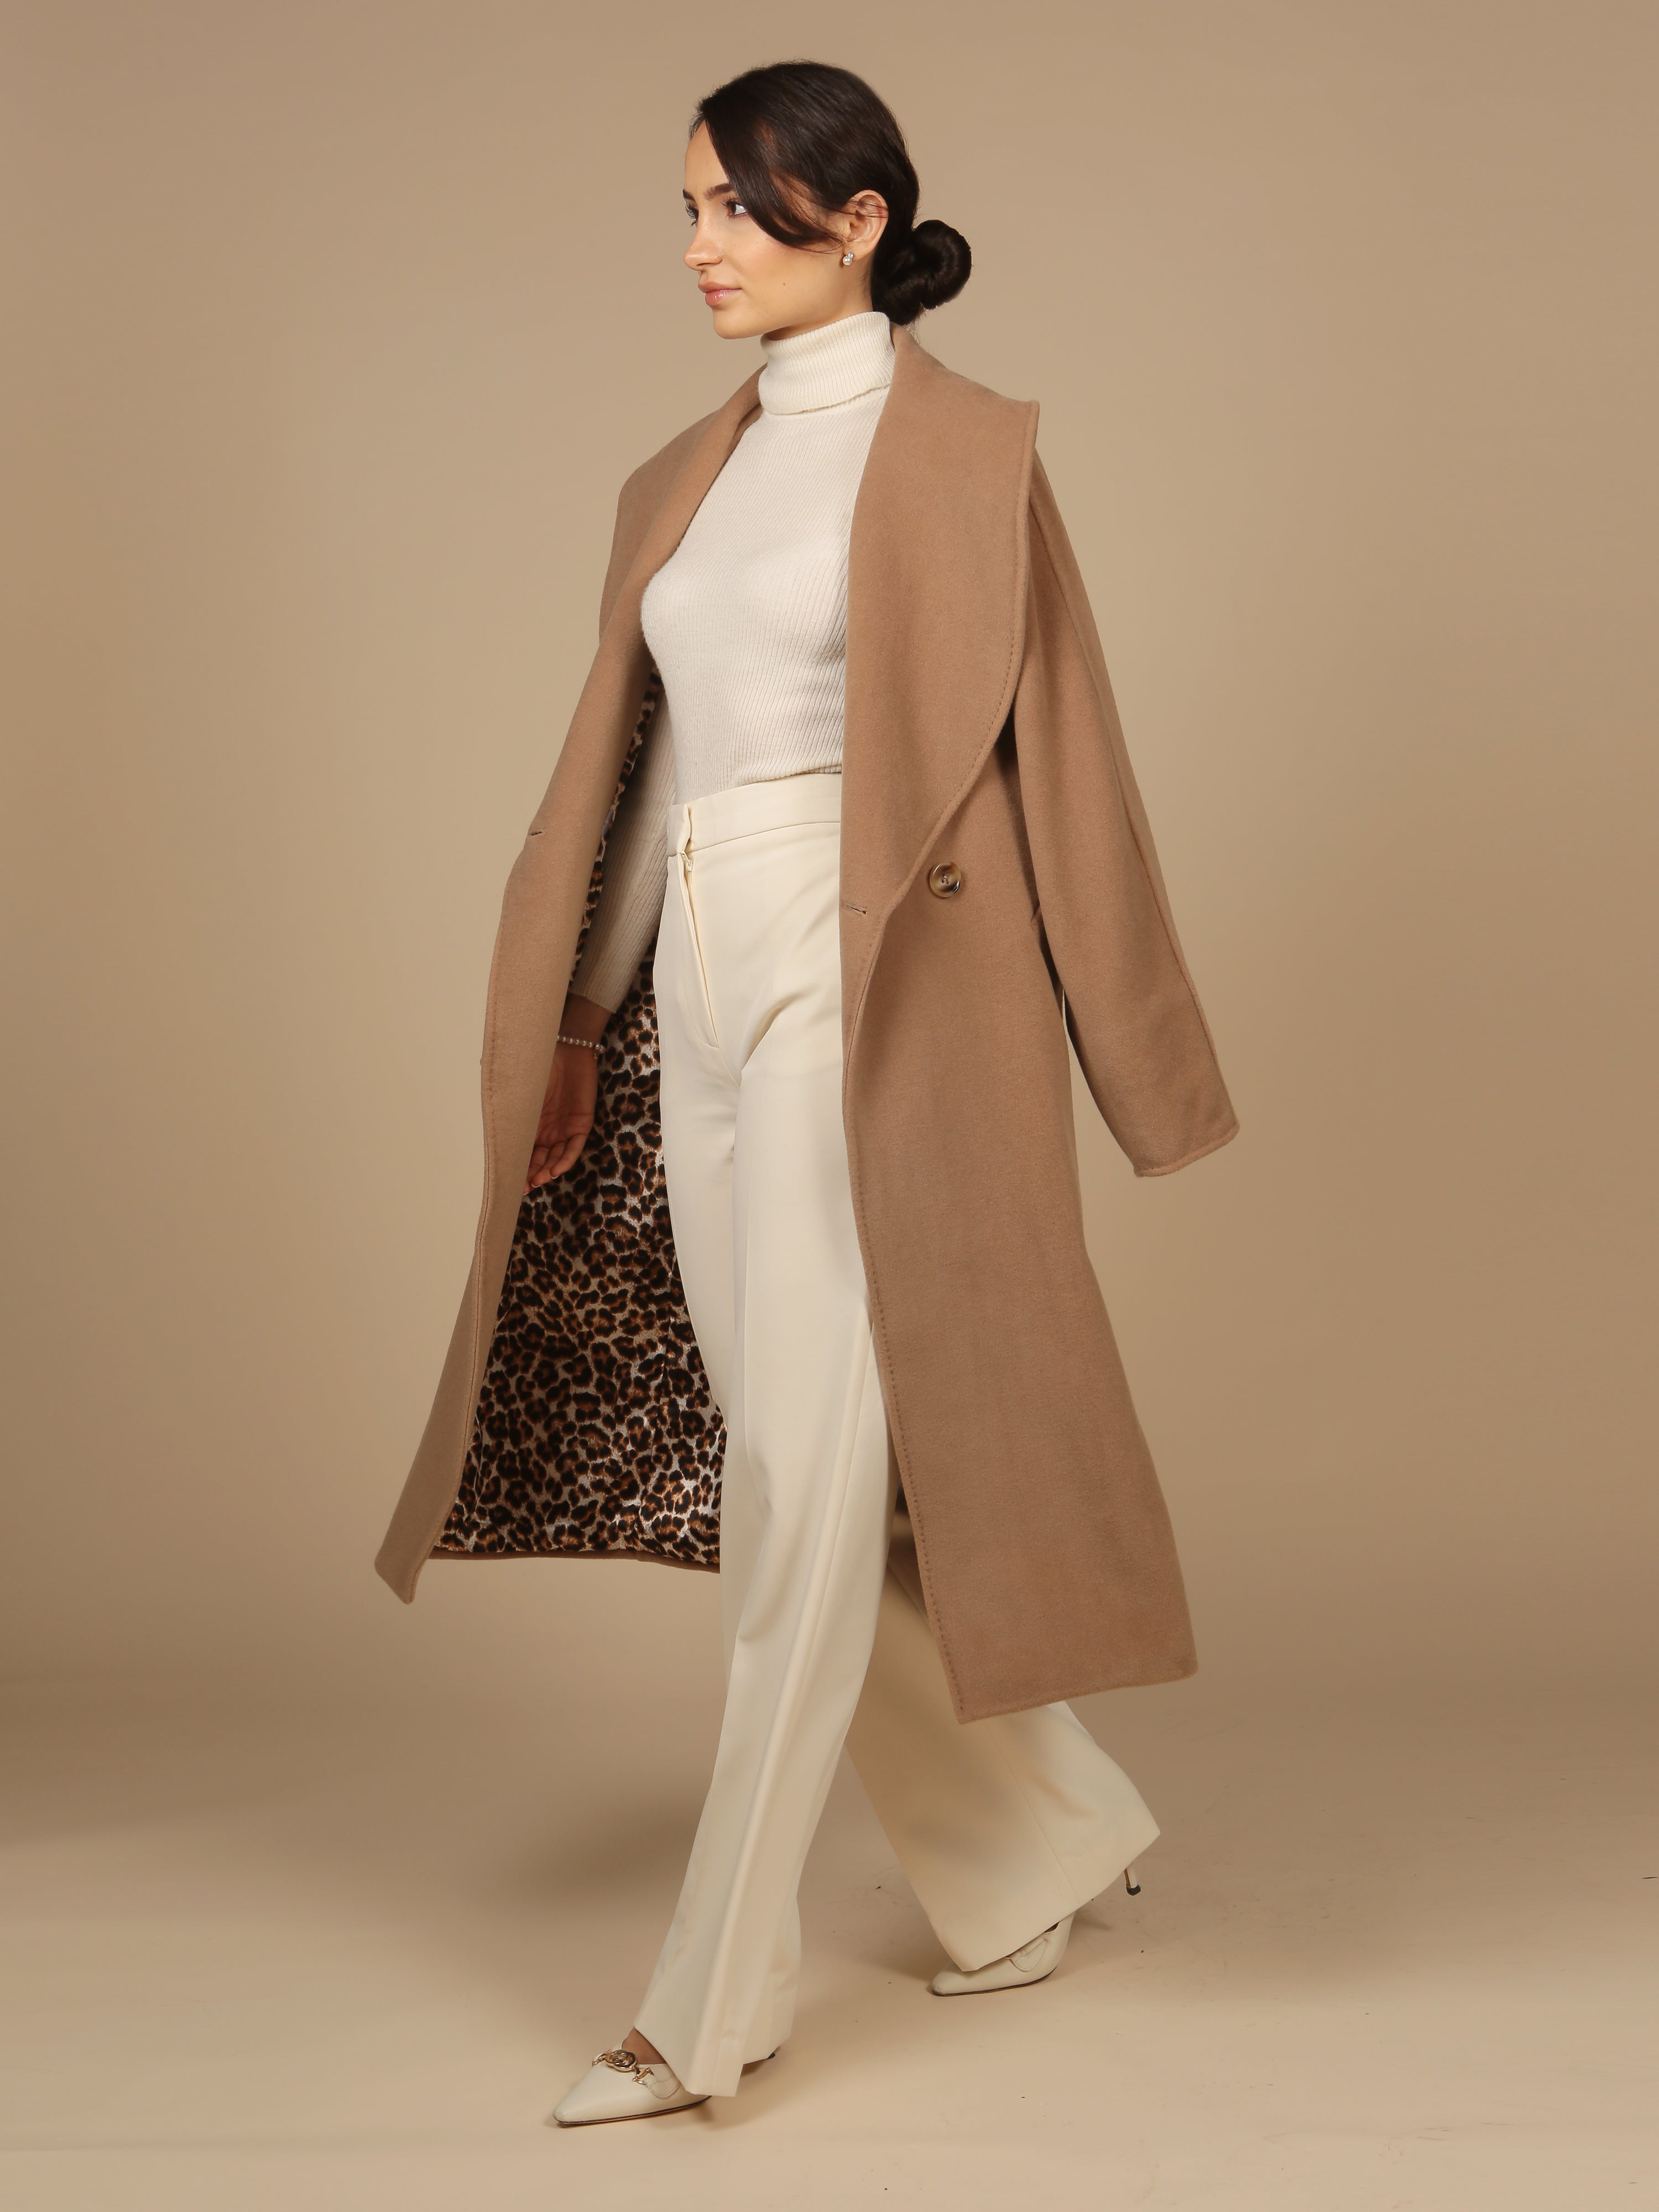 'Hepburn' Italian Virgin Wool and Cashmere Coat  in Marrone